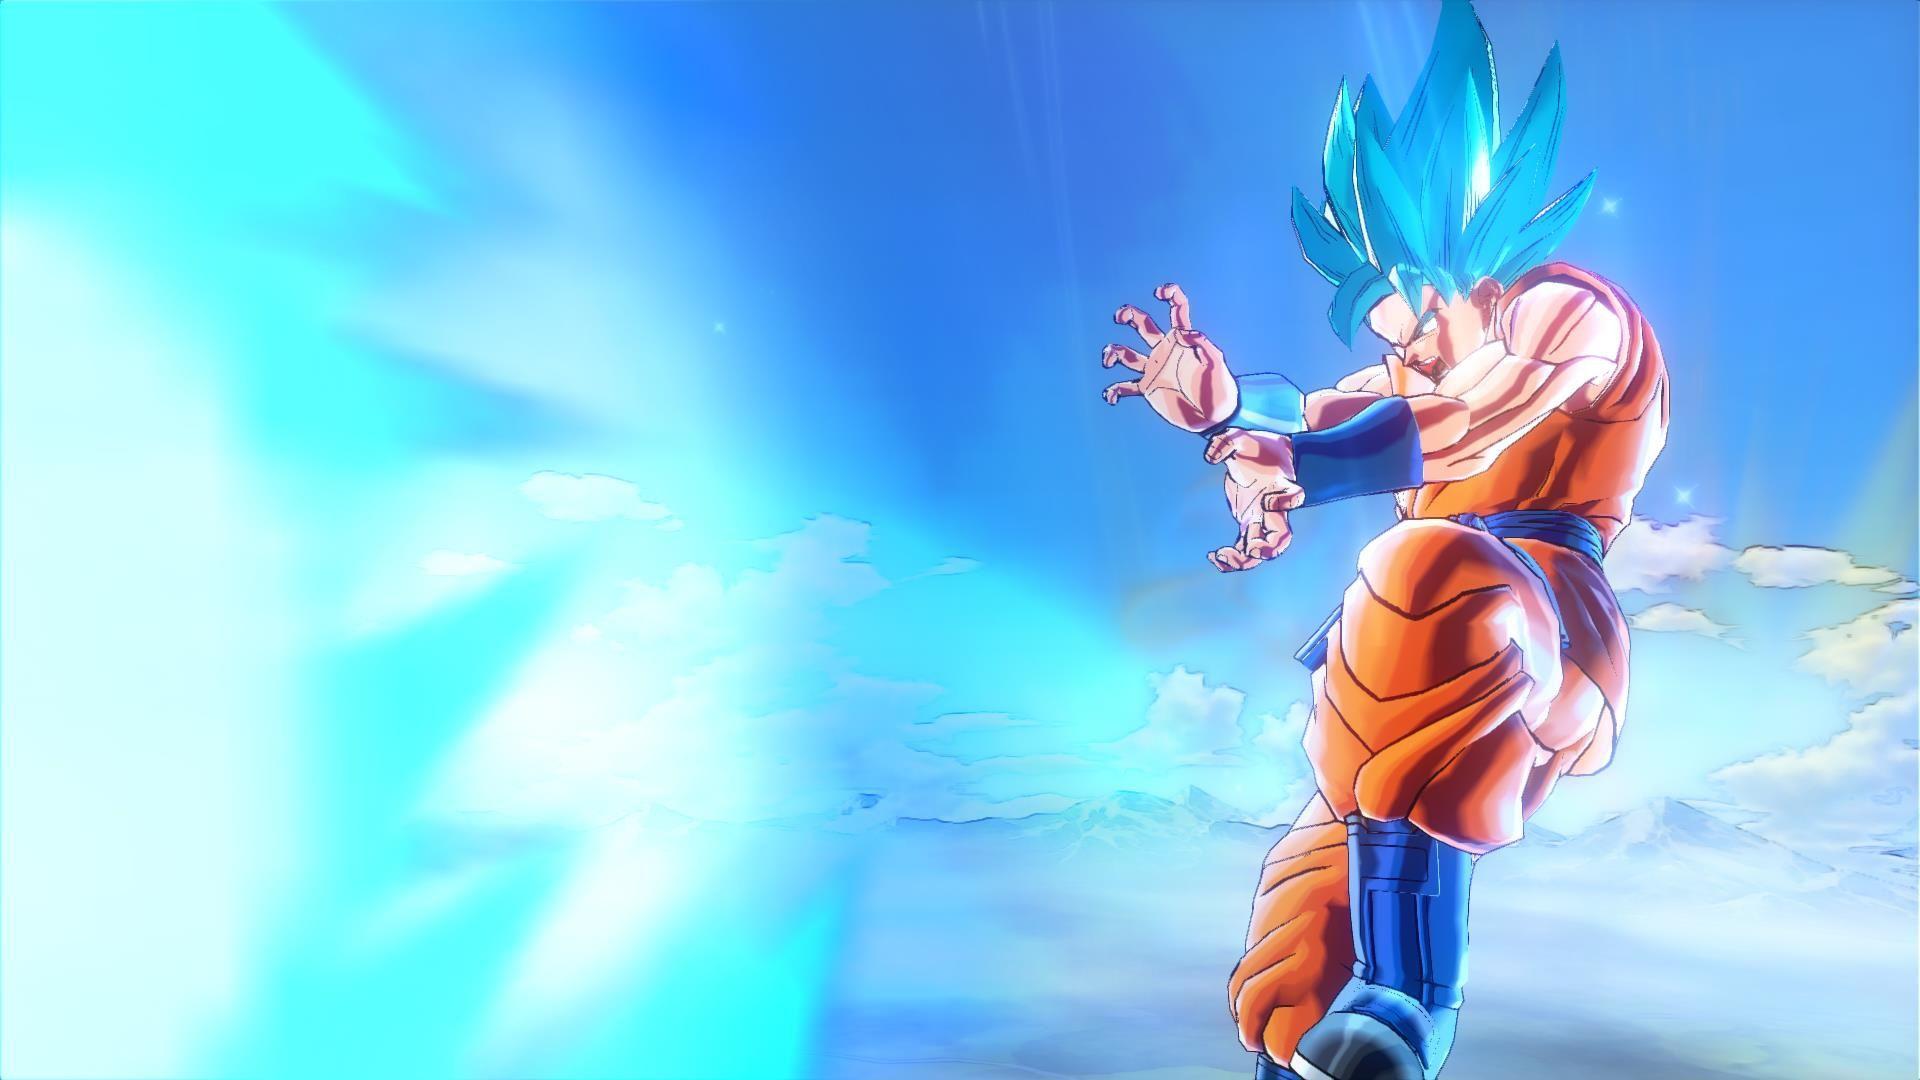 Super Saiyan God Super Saiyan Goku and Vegeta DLC for Dragon Ball